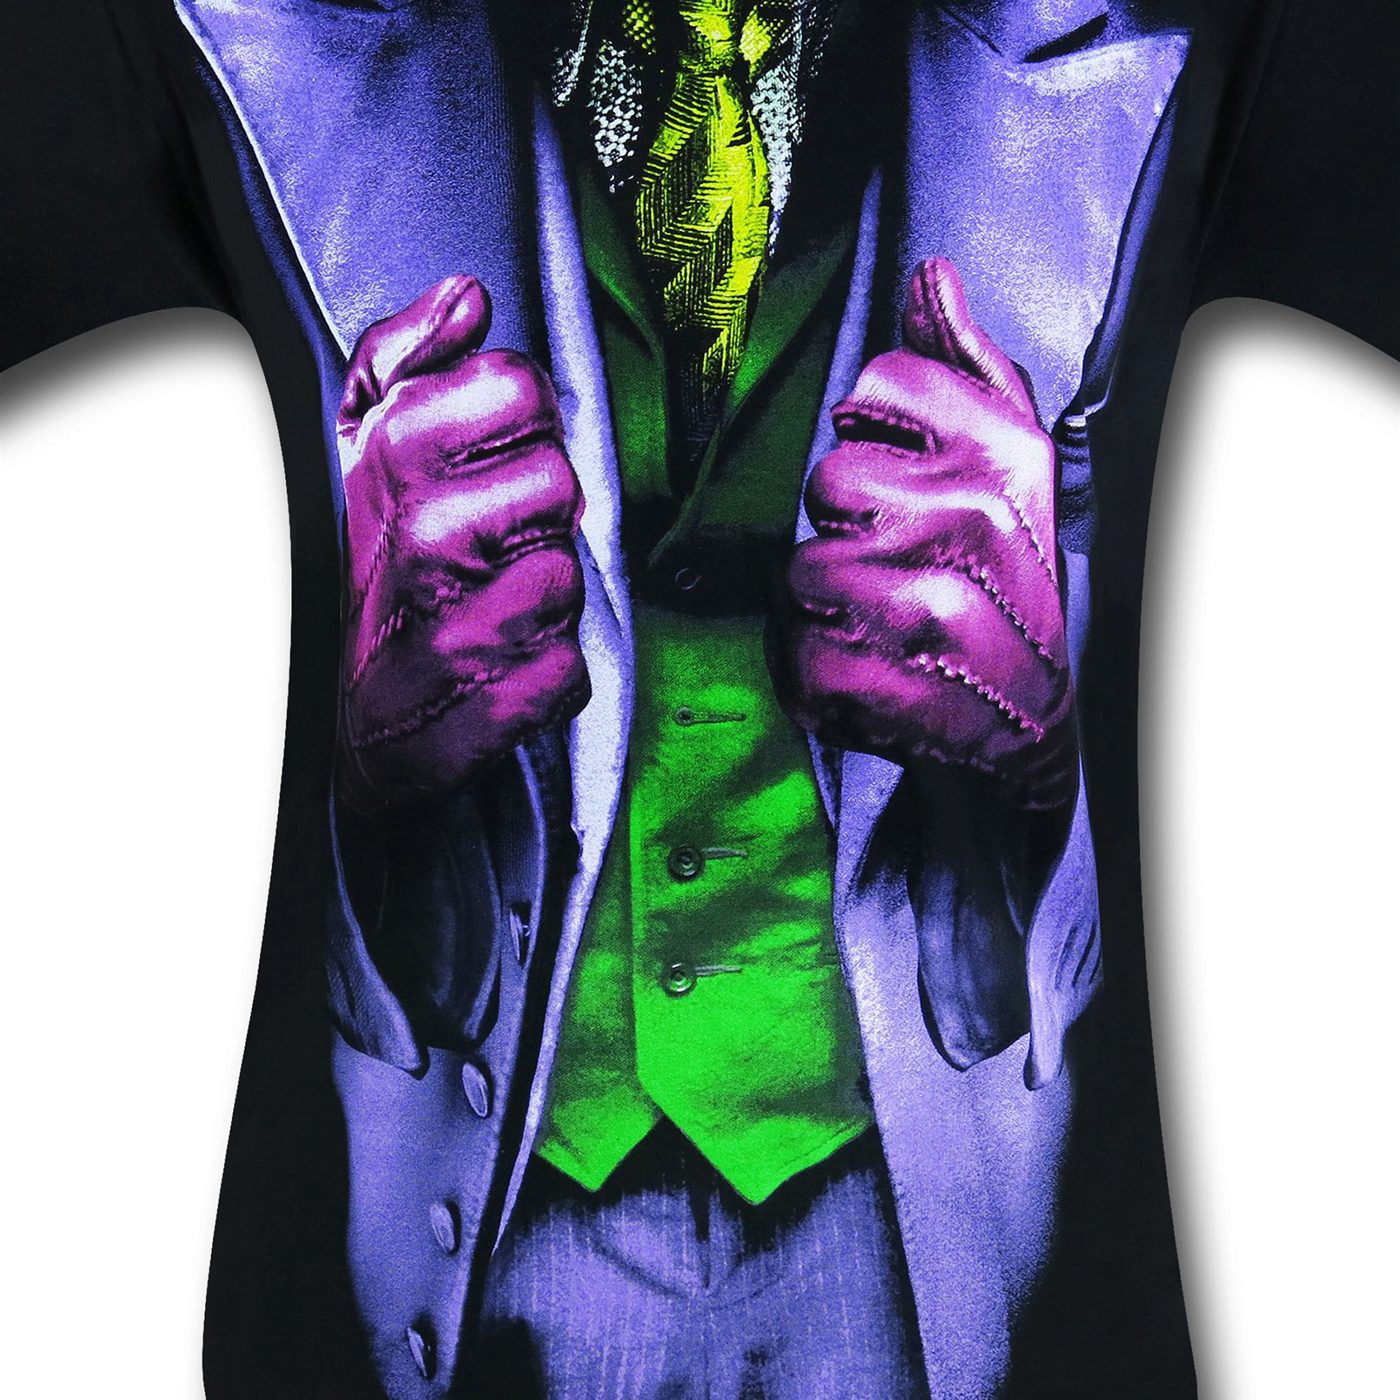 Joker Dark Knight Movie Costume T-Shirt